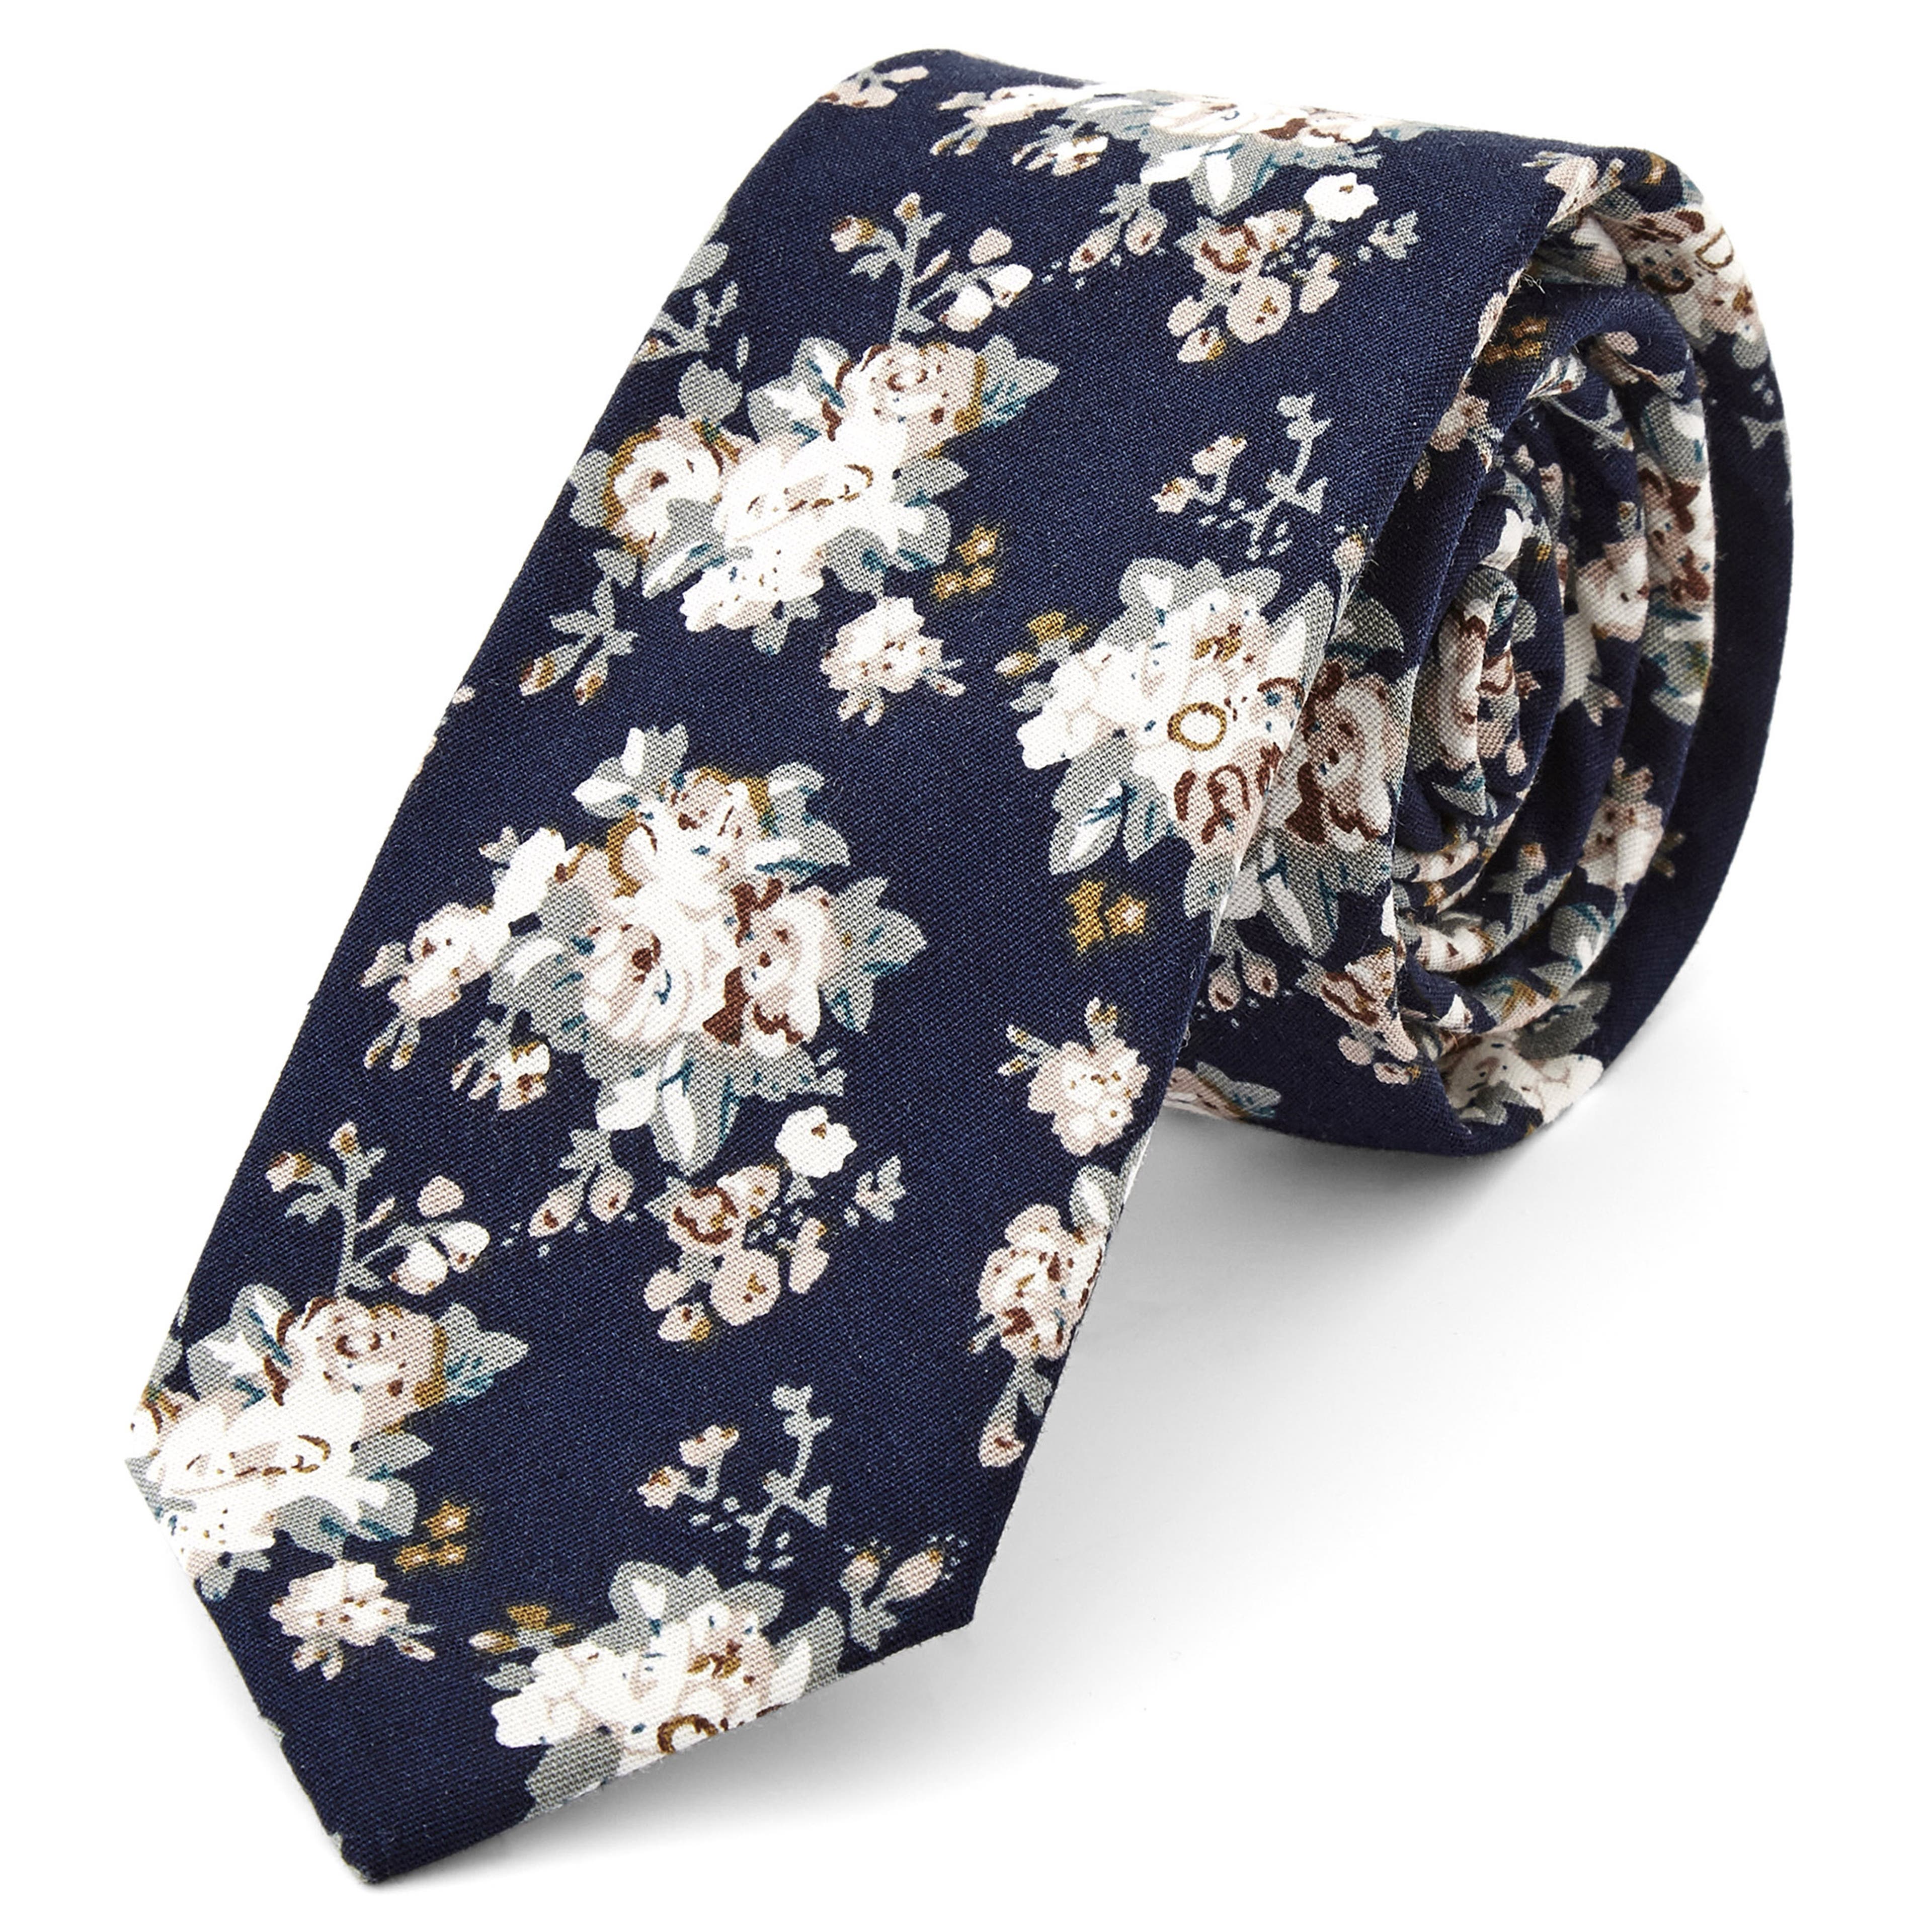 Cravate fleurie bleue et blanche